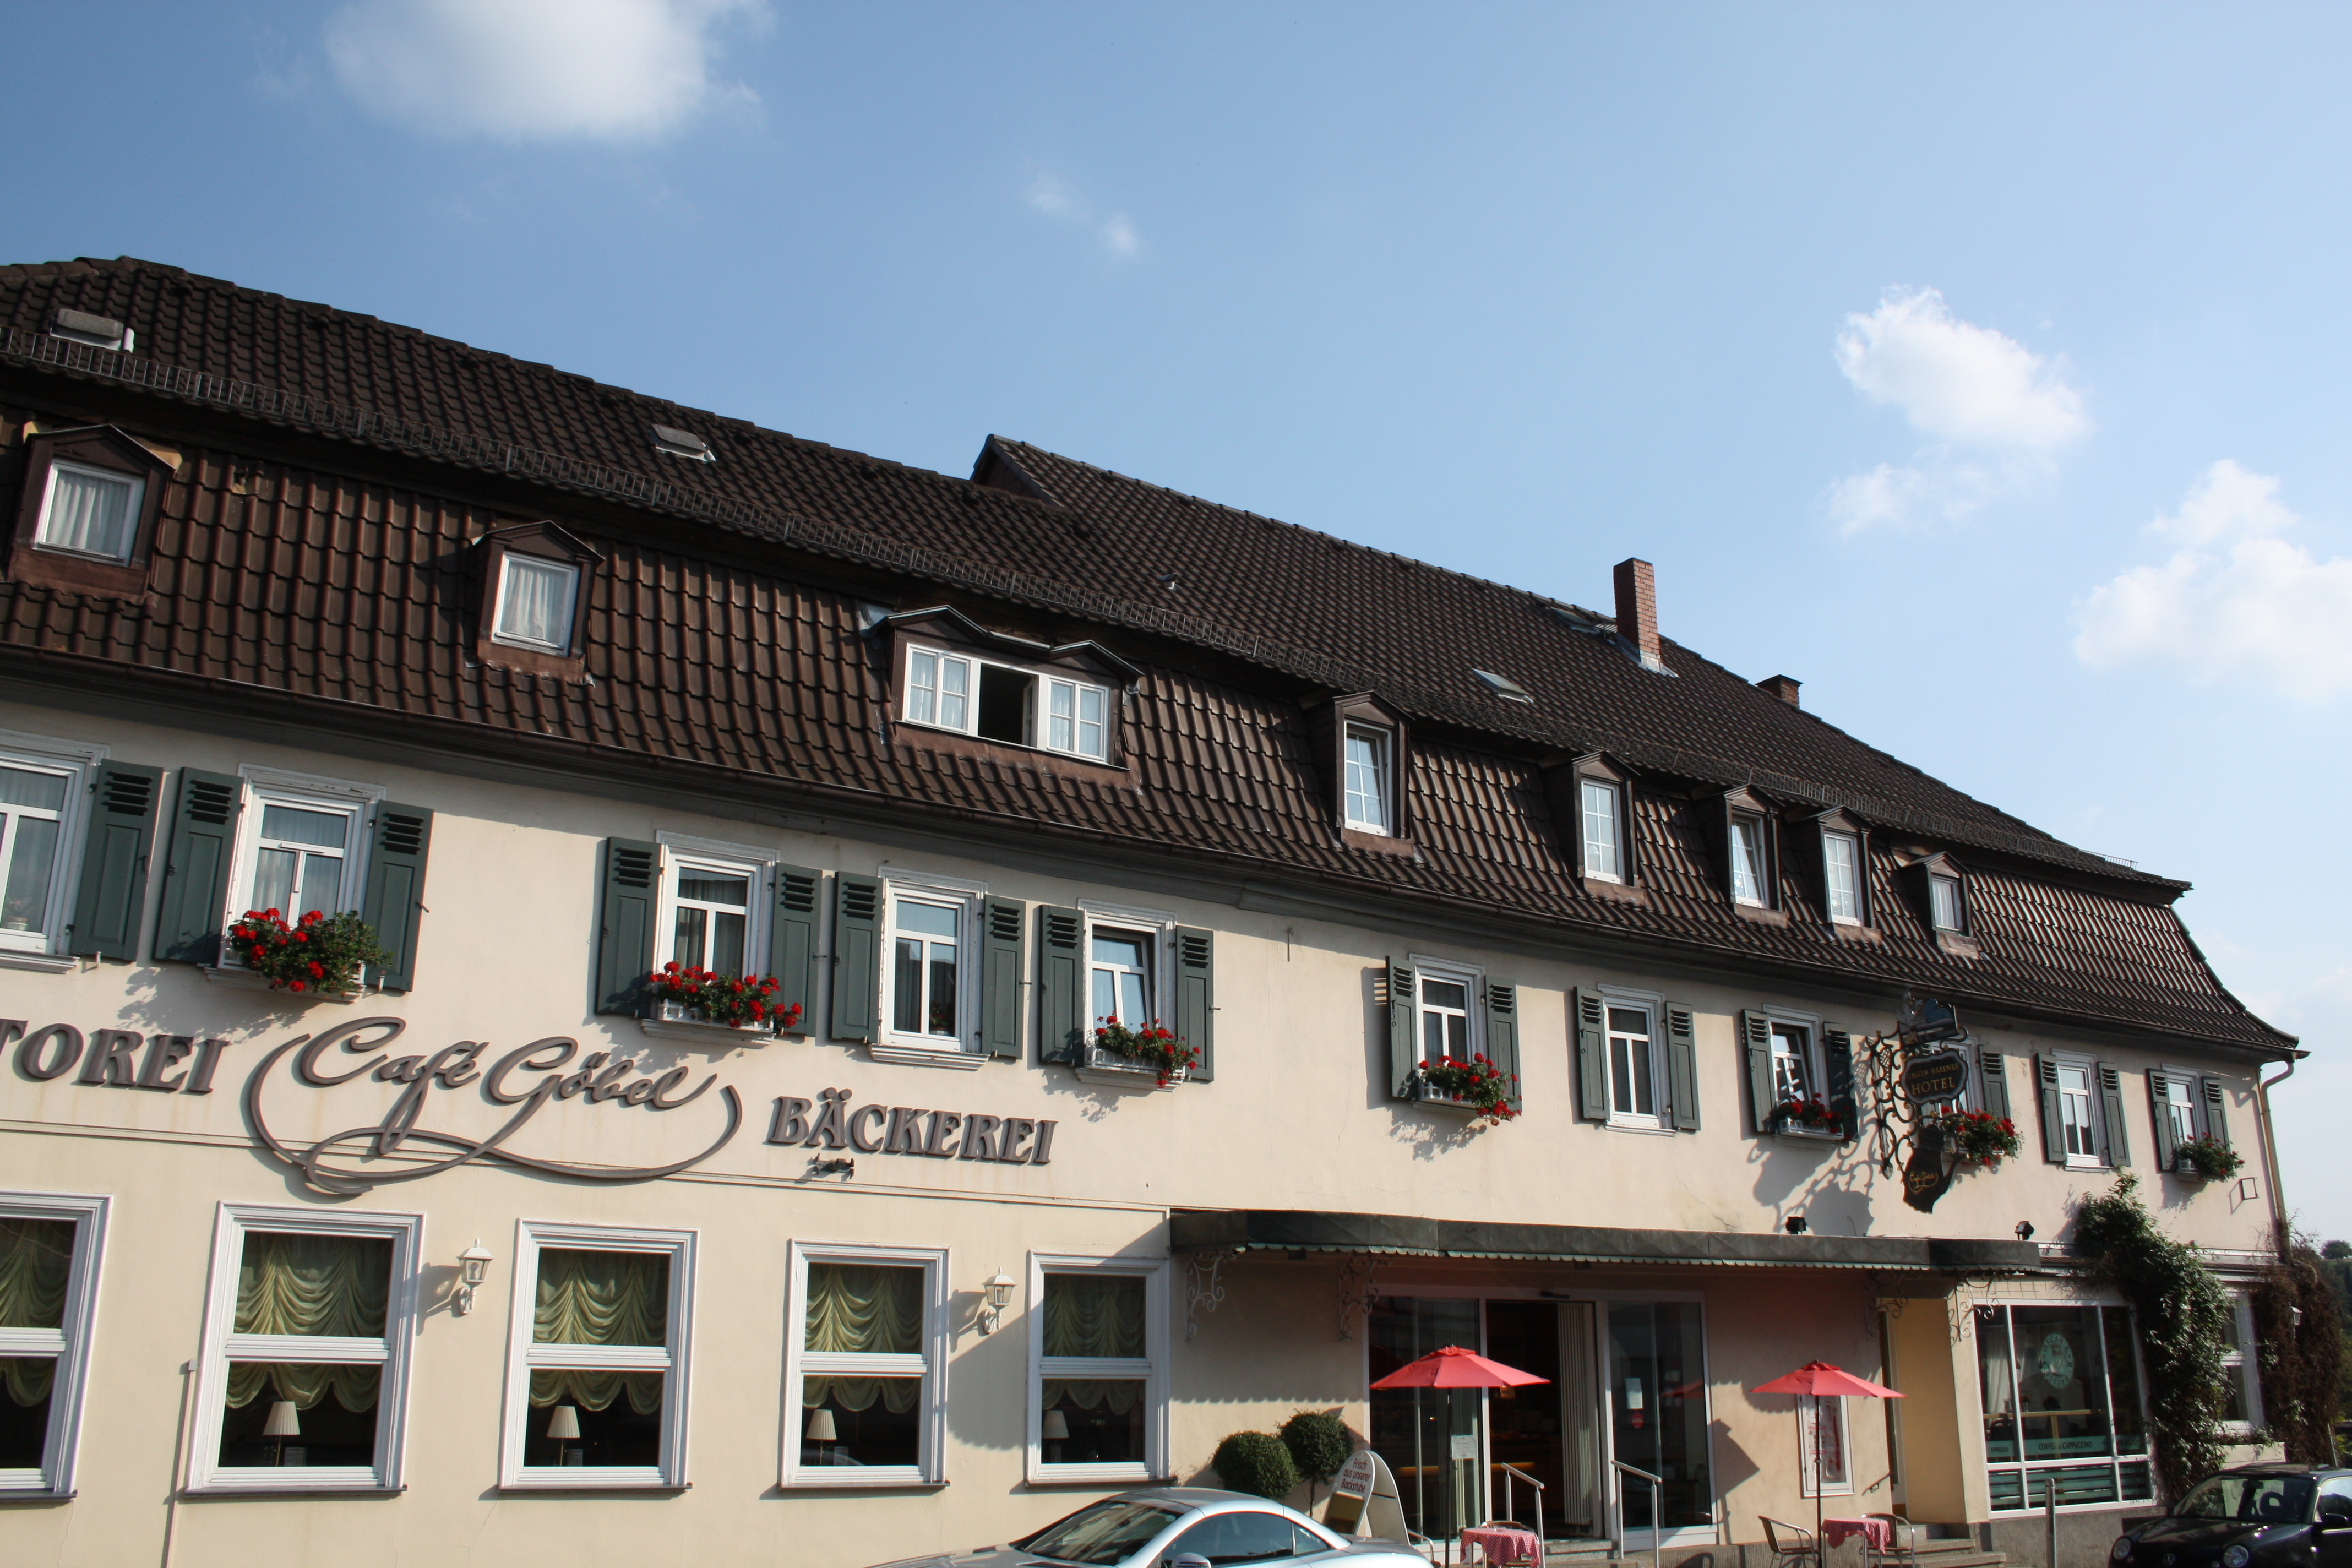 Hotel Café Unser kleines Hotel Goebel, Laubach.
